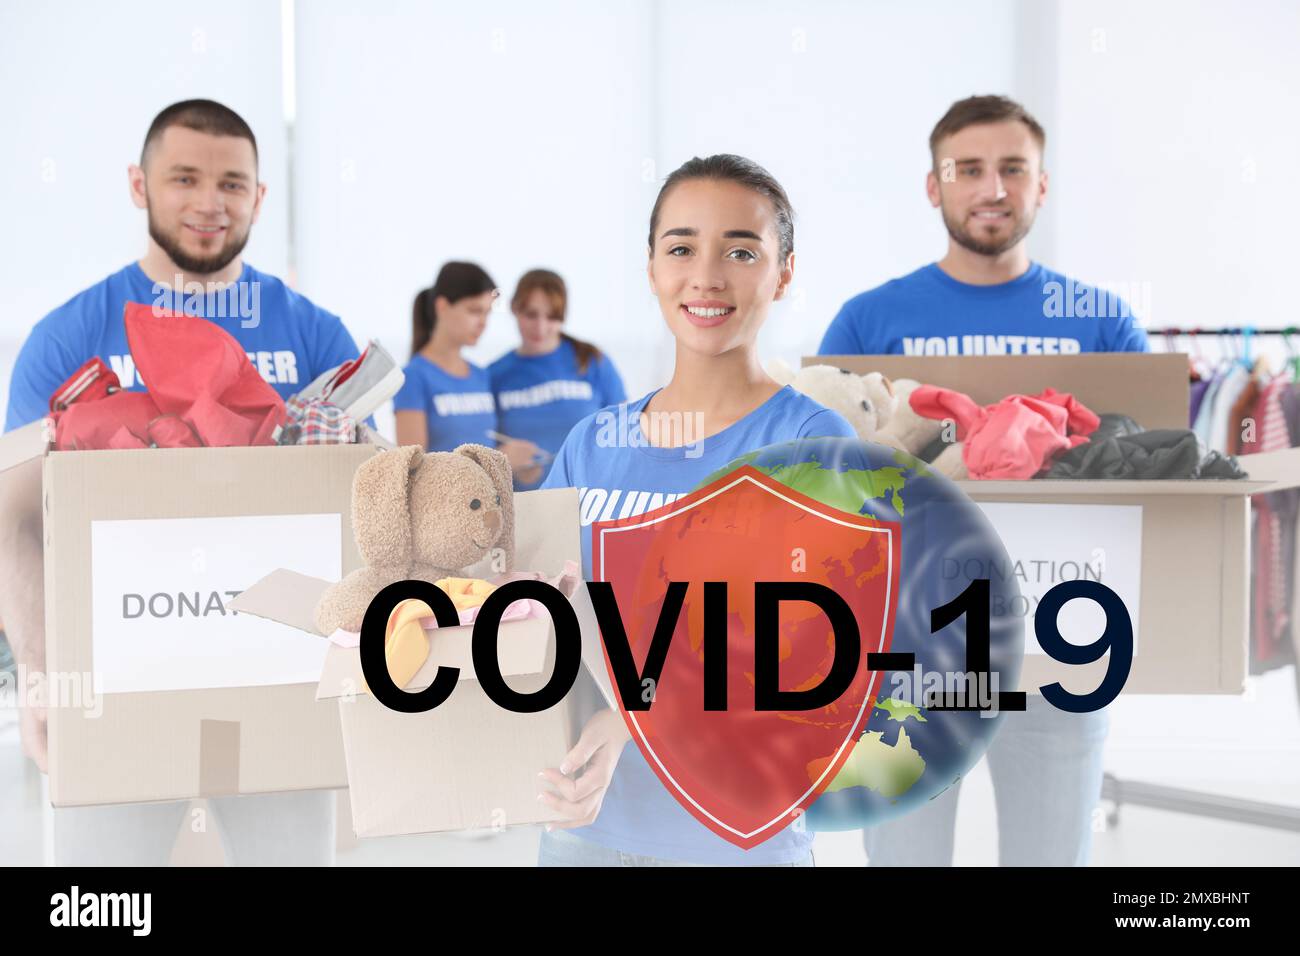 Les bénévoles s'unissent pour aider pendant l'épidémie de COVID-19. Groupe de personnes avec des dons à l'intérieur, bouclier et des illustrations du monde entier Banque D'Images